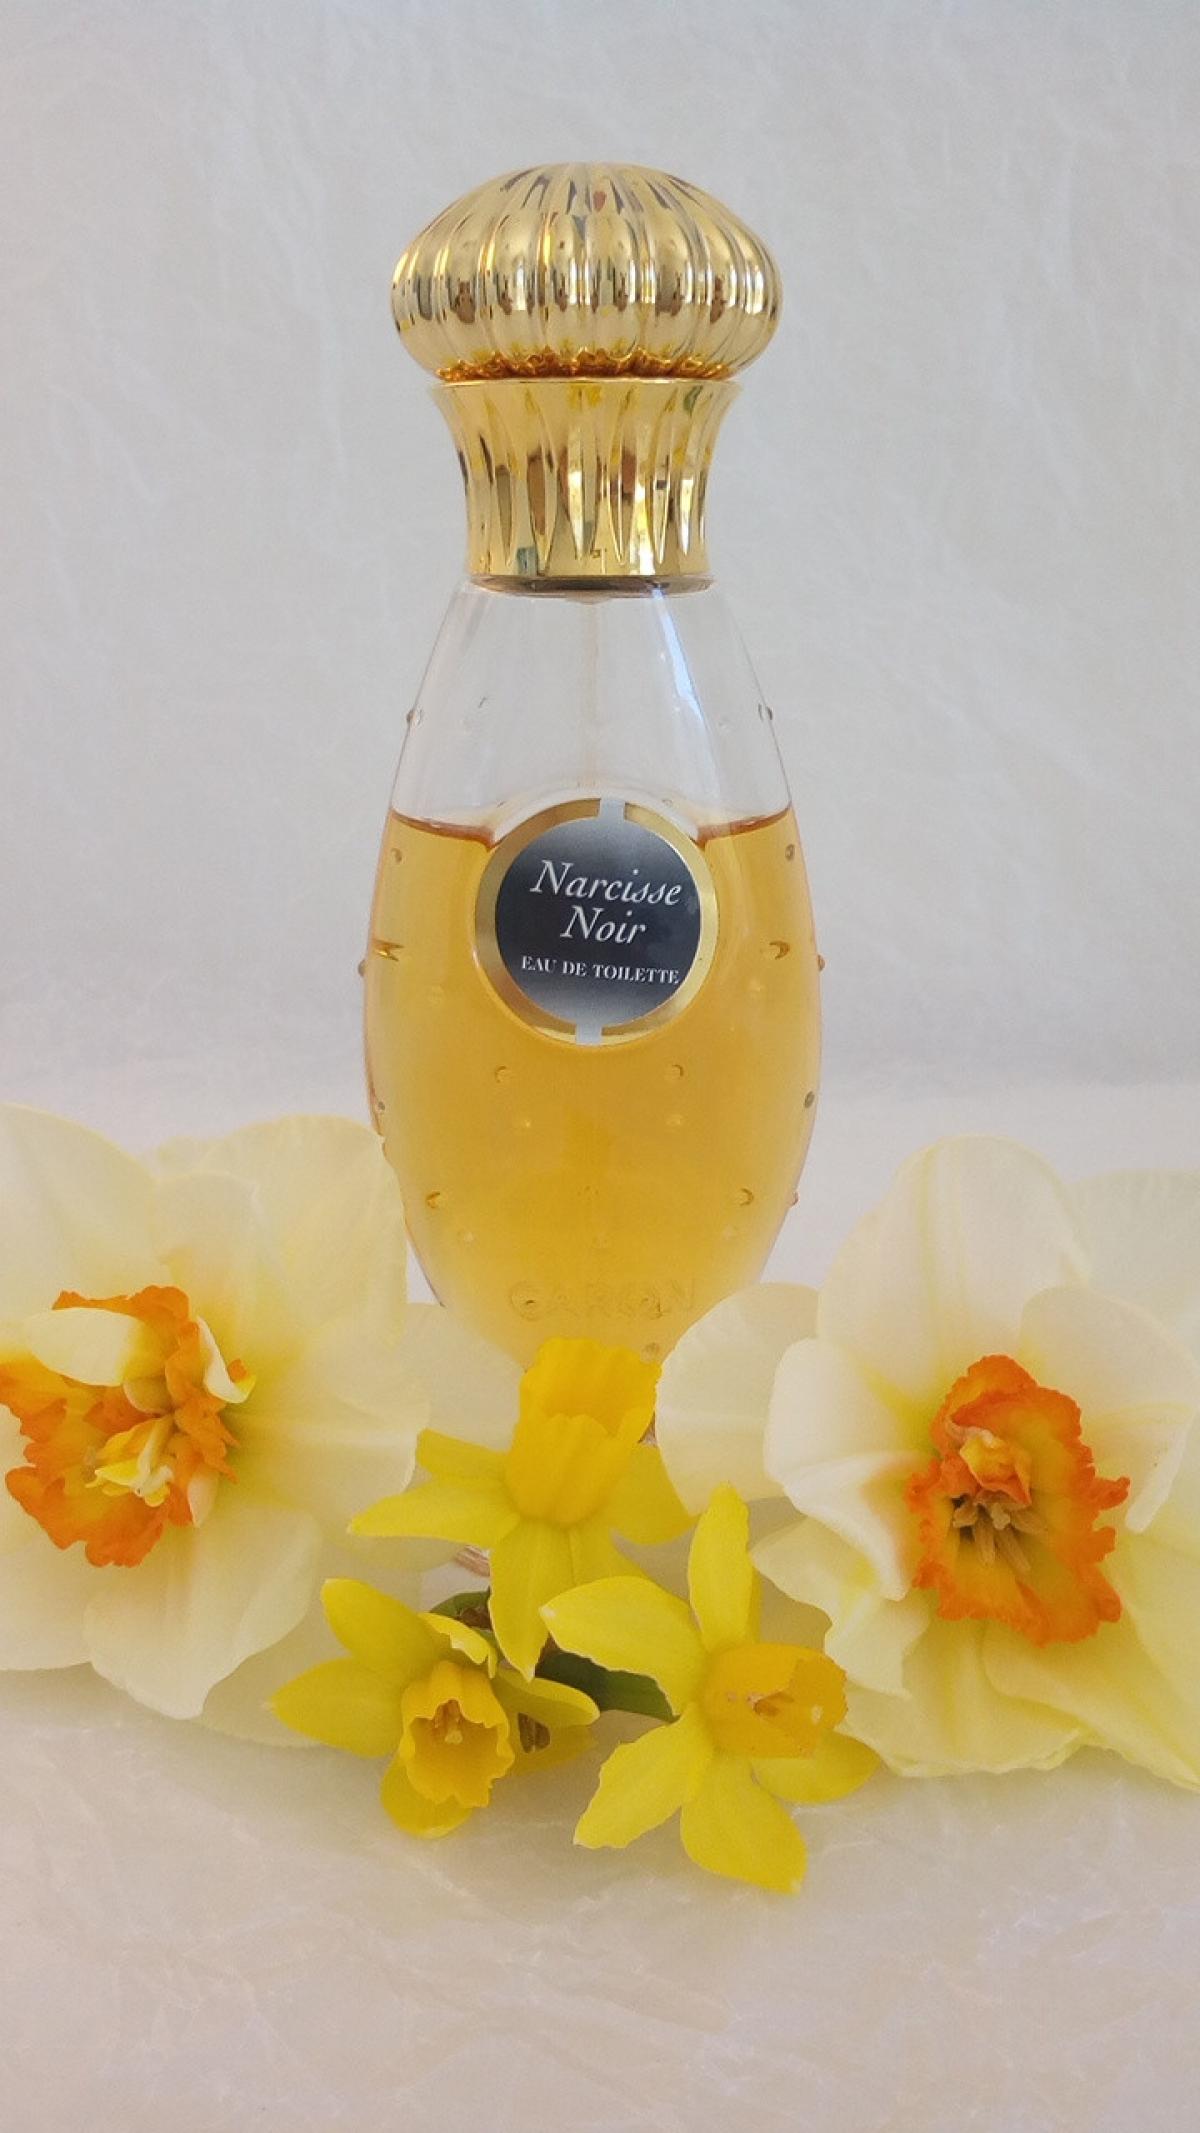 Narcisse Noir (1911) Caron parfum - un parfum pour femme 1911